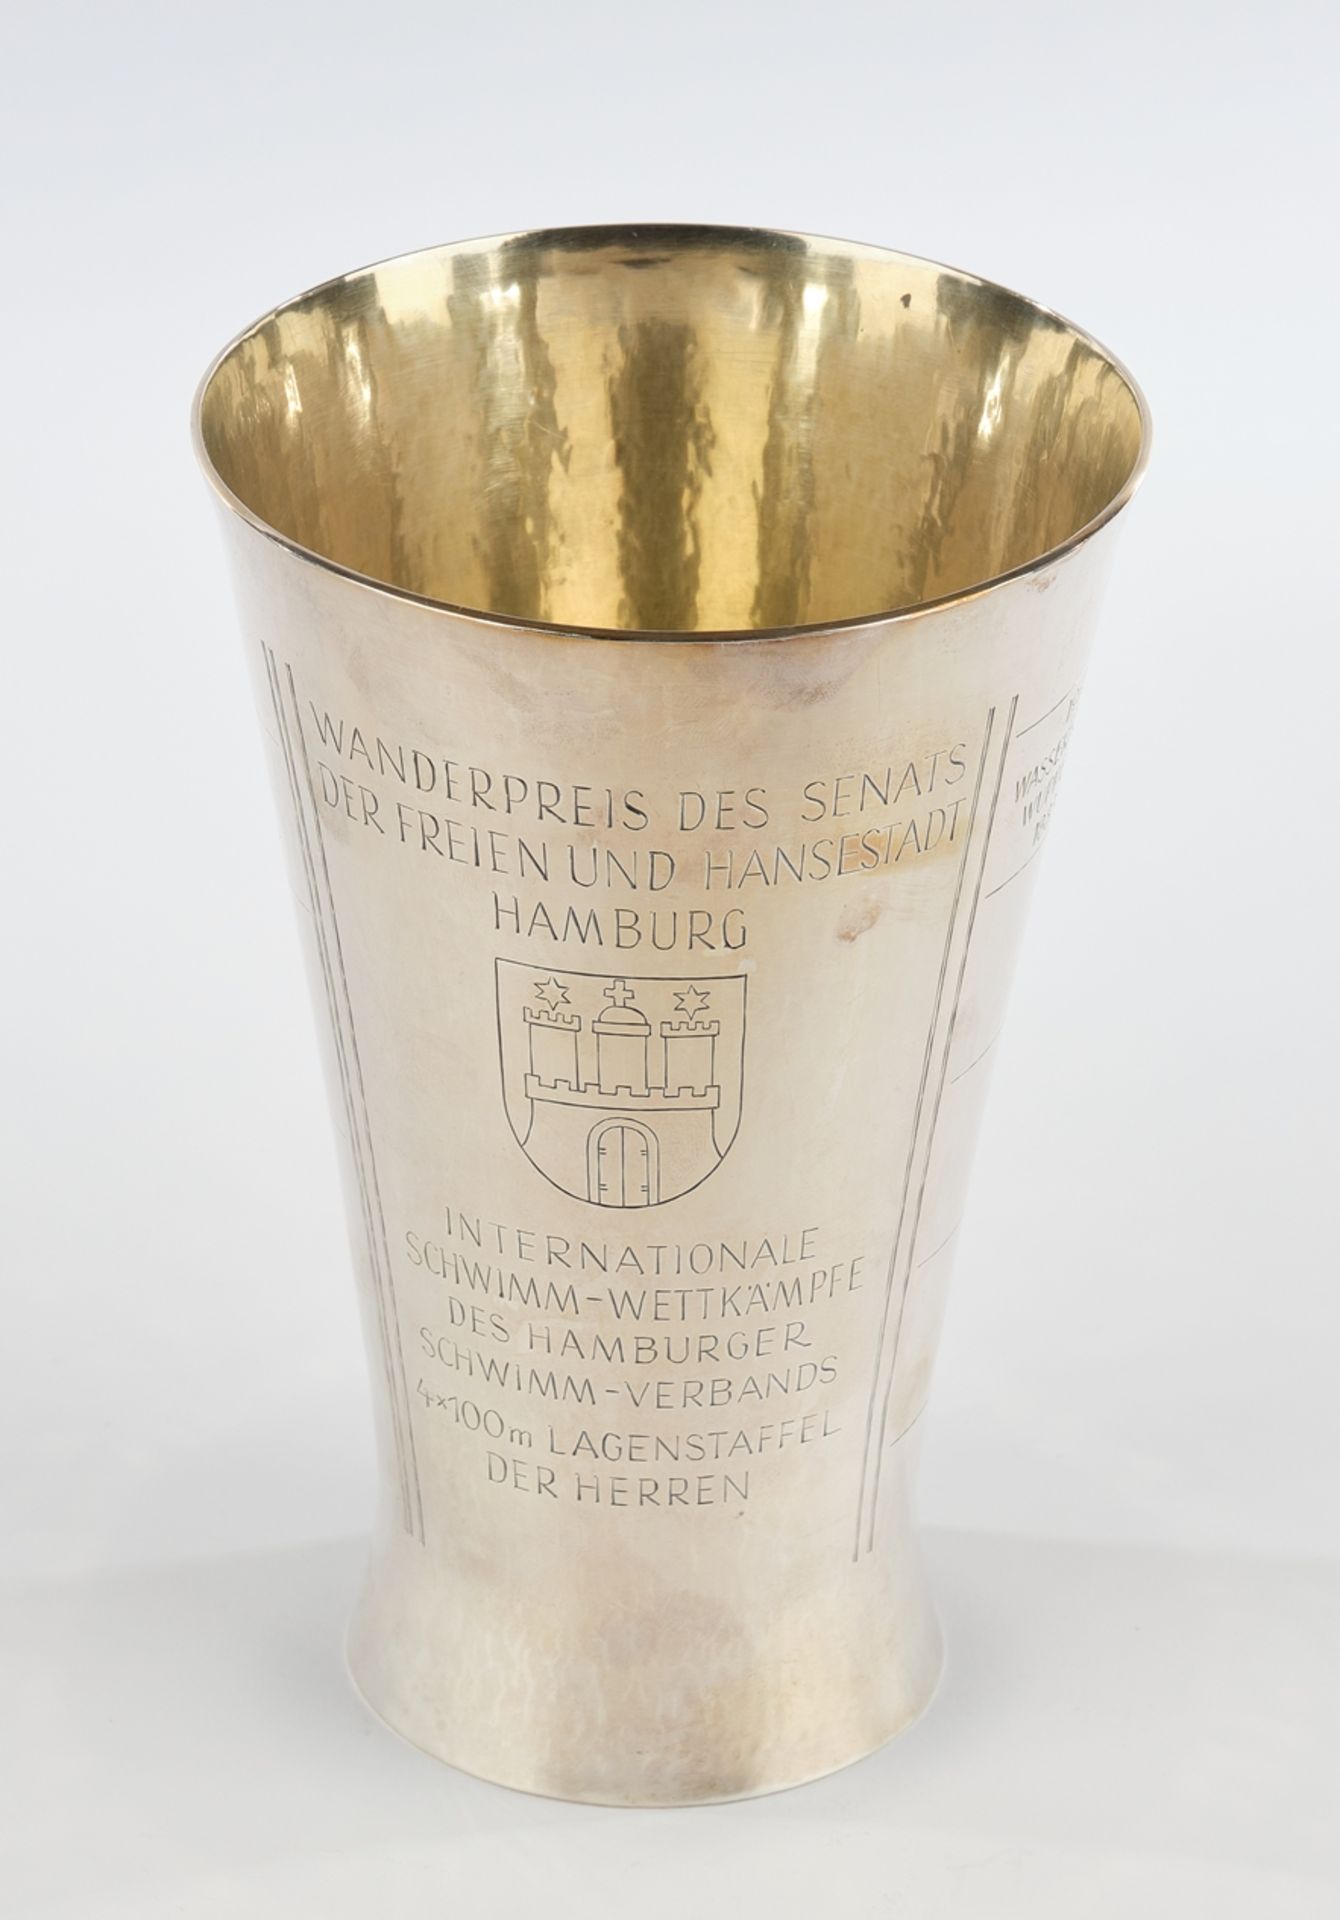 Prize cup, ", "Wanderpreis des Senats der Freien und Hansestadt Hamburg Internationale Schwimm-Wett